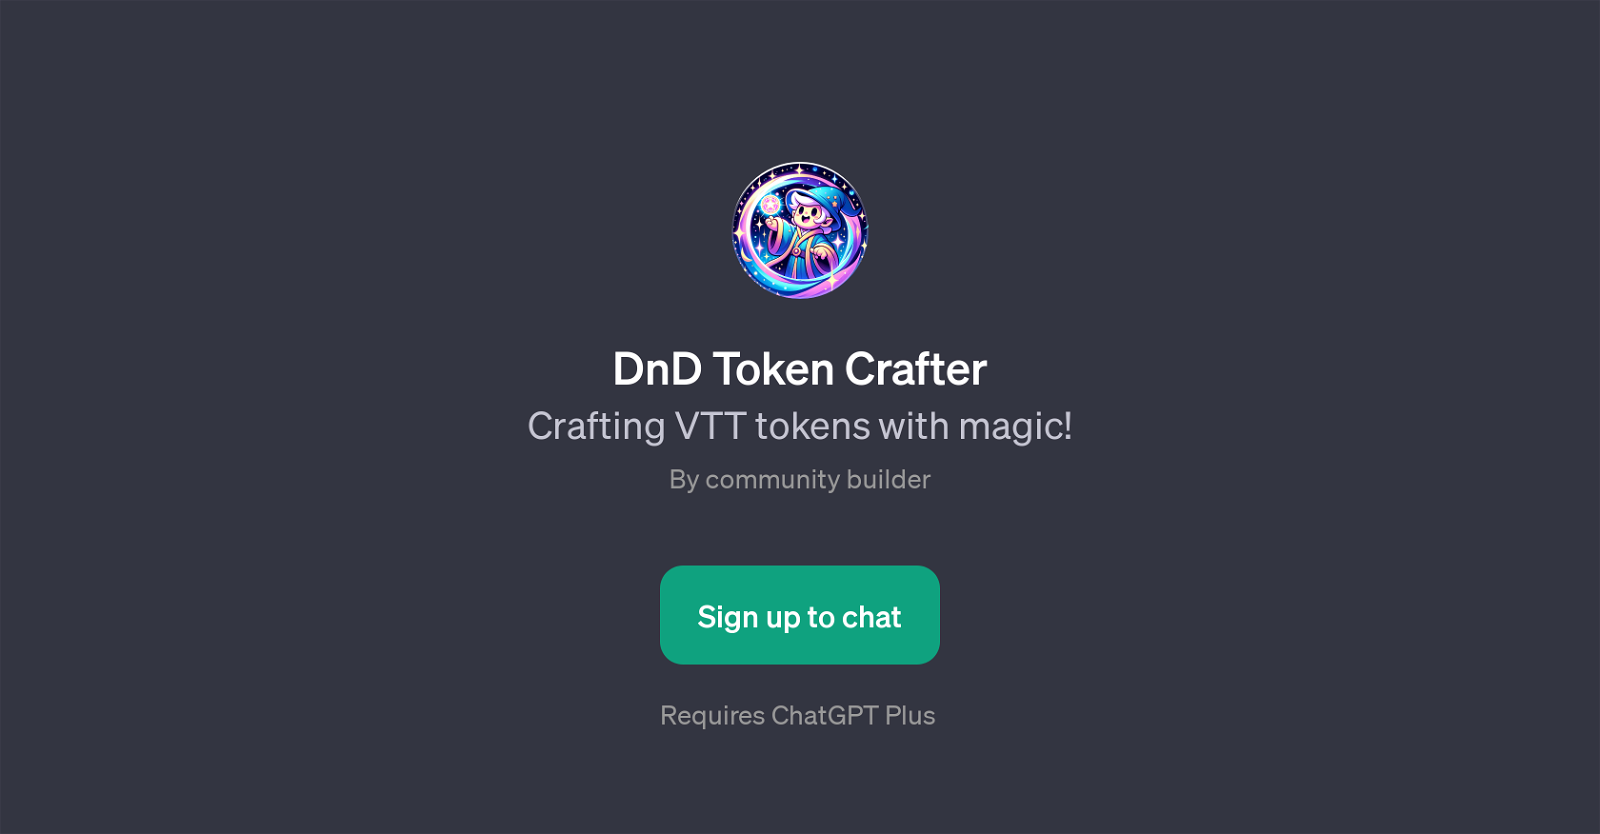 DnD Token Crafter website